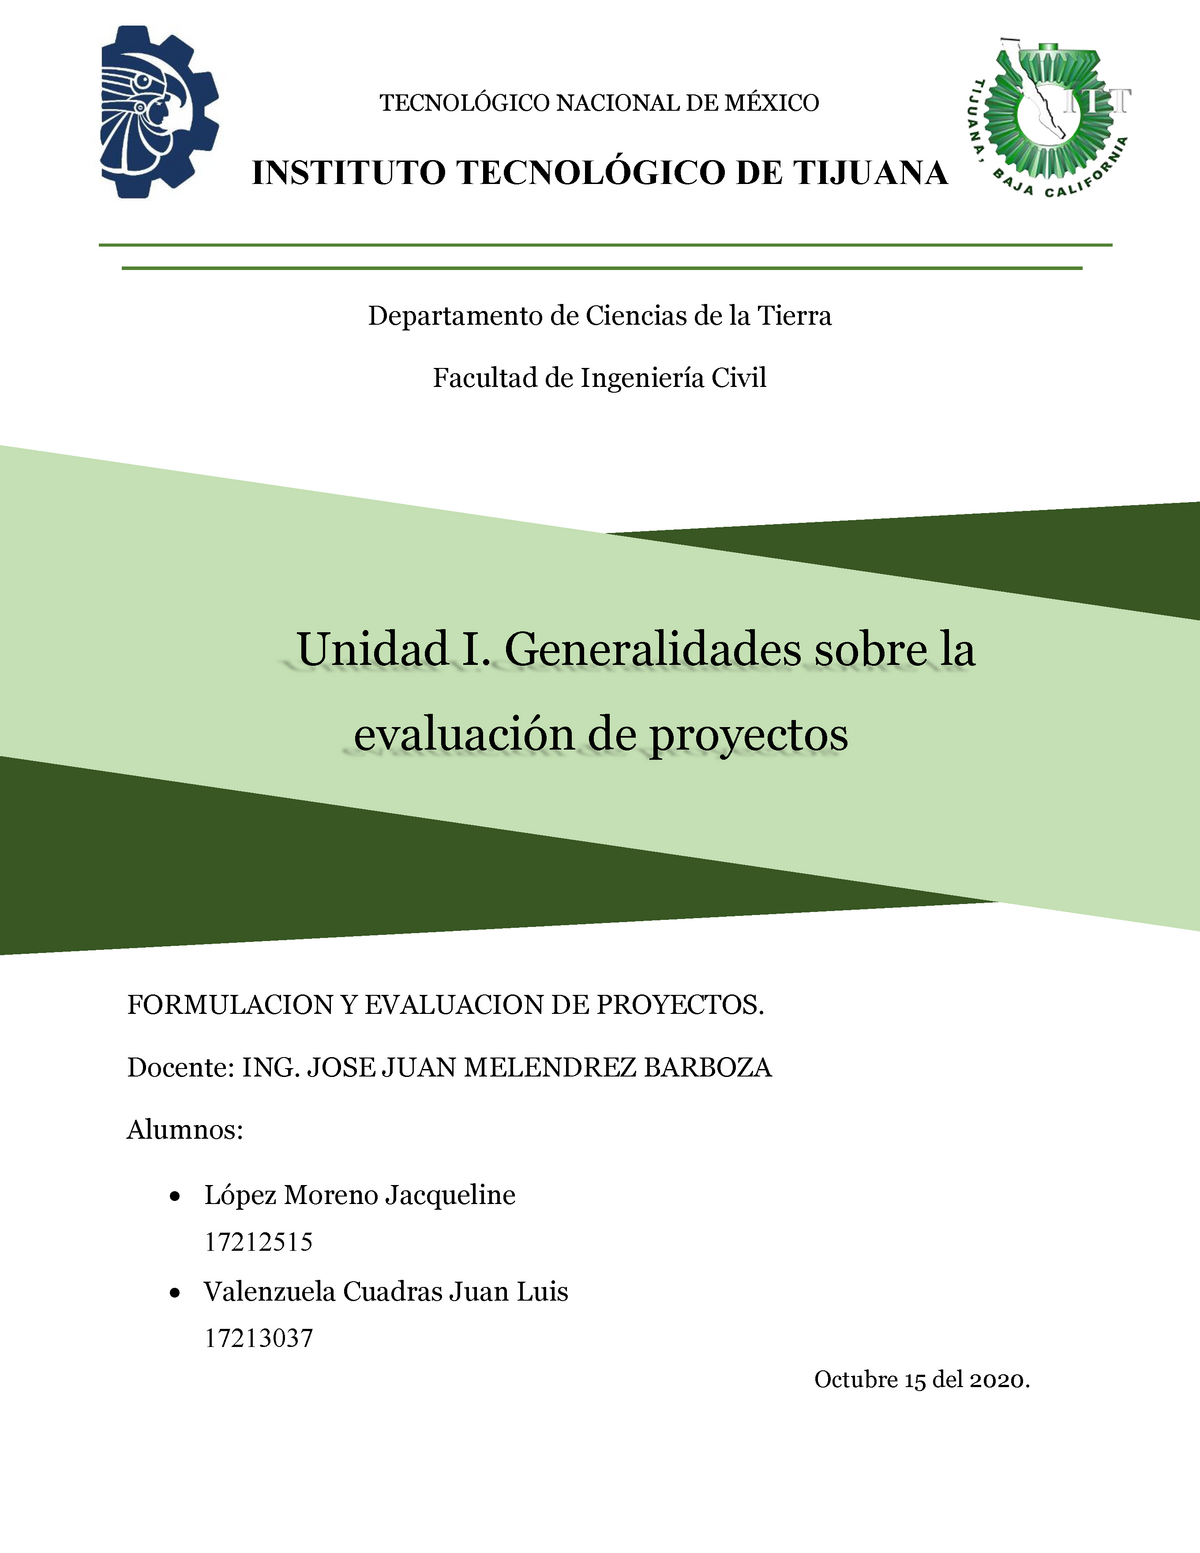 Unidad I Generalidades De La Evaluación De Proyectos TecnolÓgico Nacional De MÉxico Instituto 3863